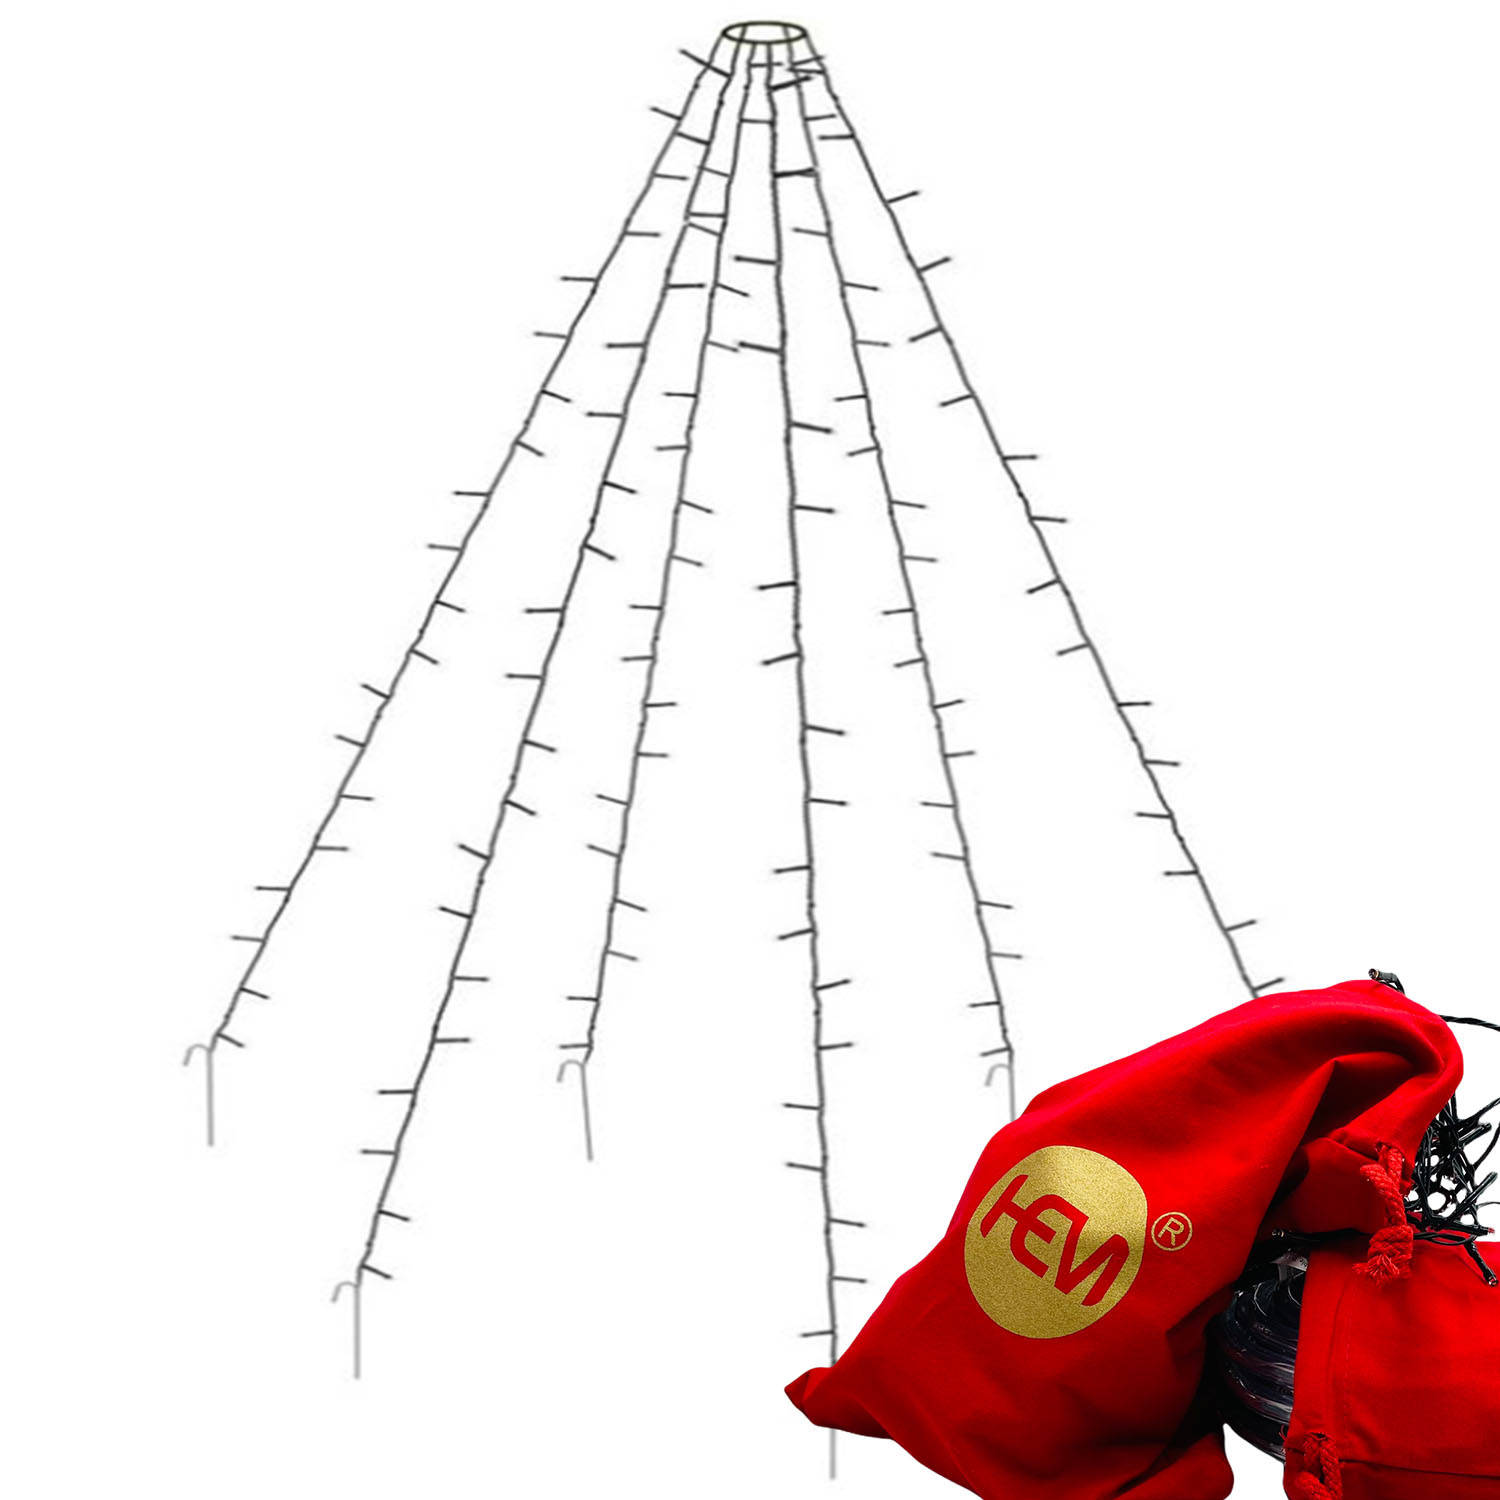 Hem Vlaggenmast Verlichting - 360 Led - 8 Meter Hoog Energiezuinig Kerstverlichting Buiten